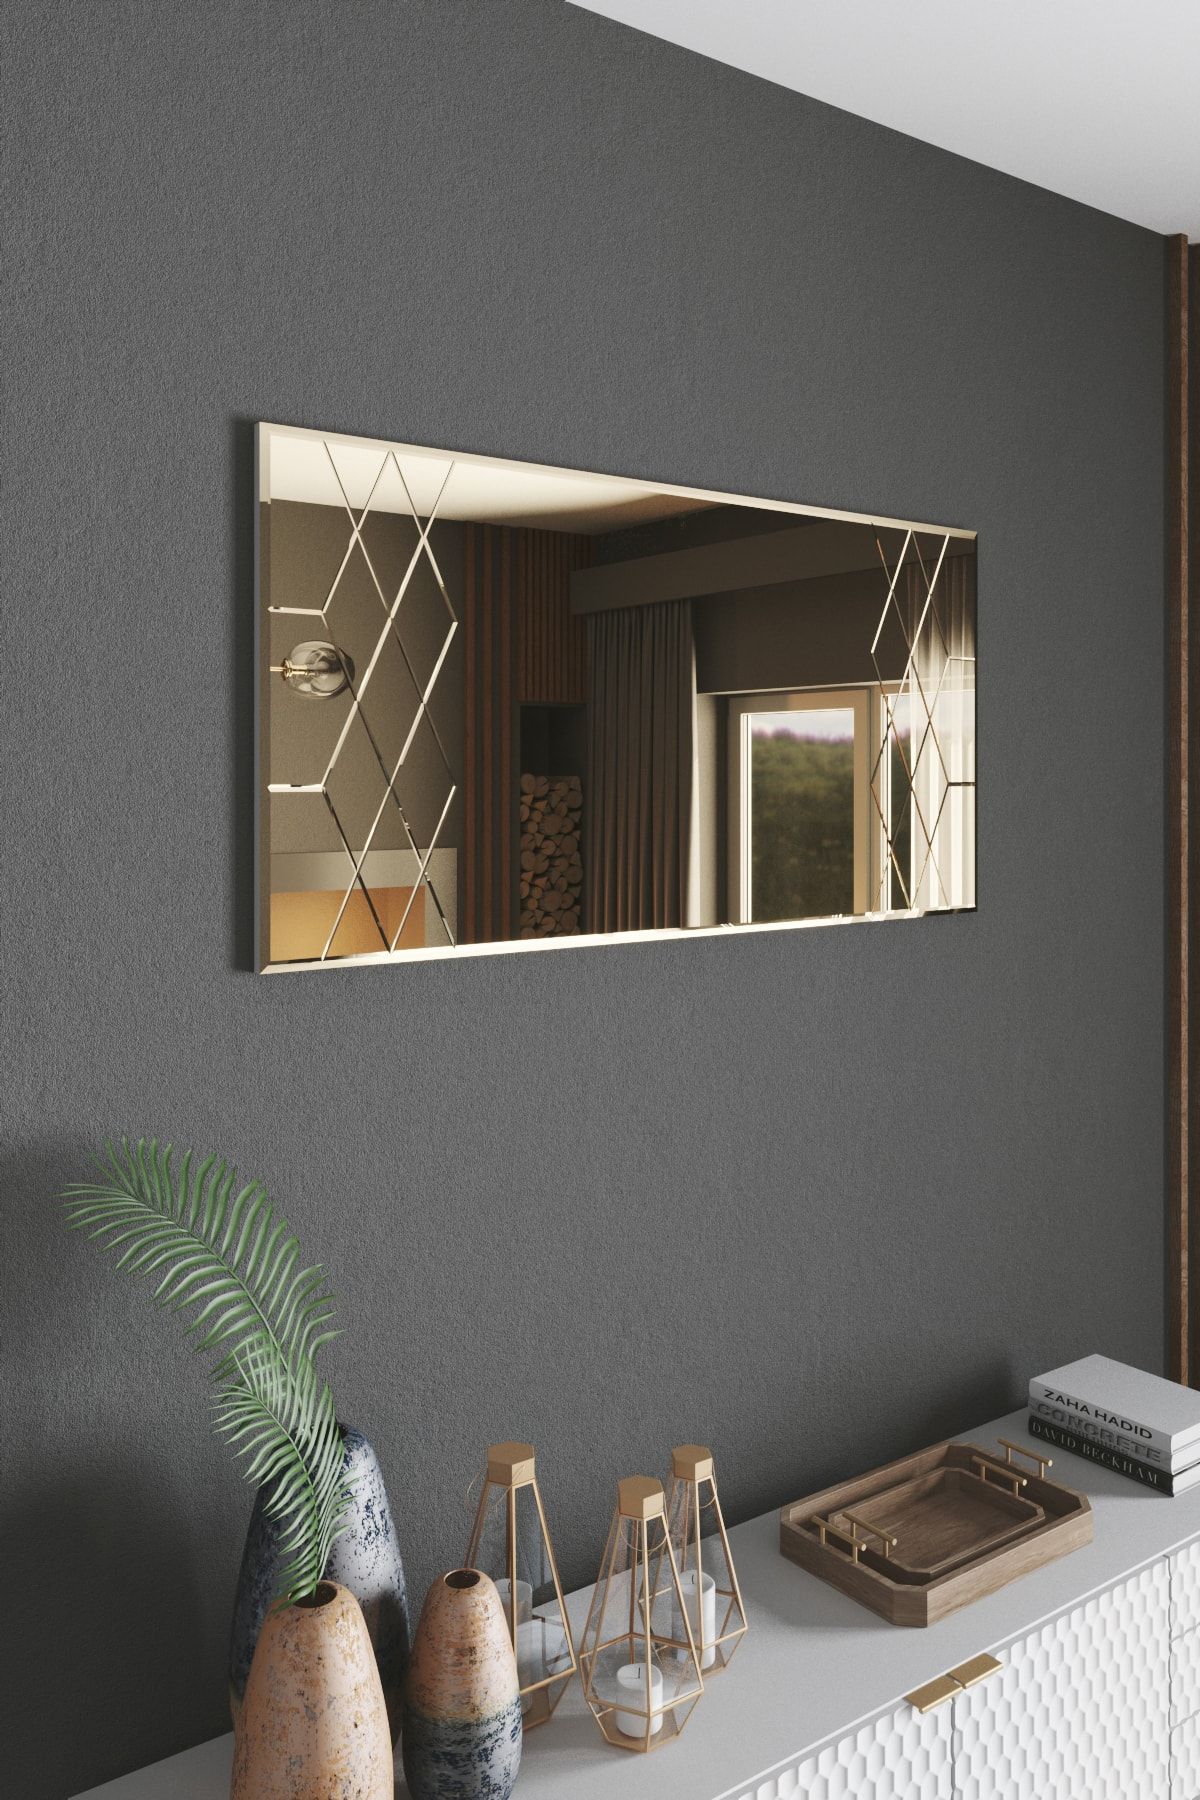 Mirrorline Dekoratif Konsol Ve Boy Aynası Baklava Kanal Bronz Renk 140x70 Cm